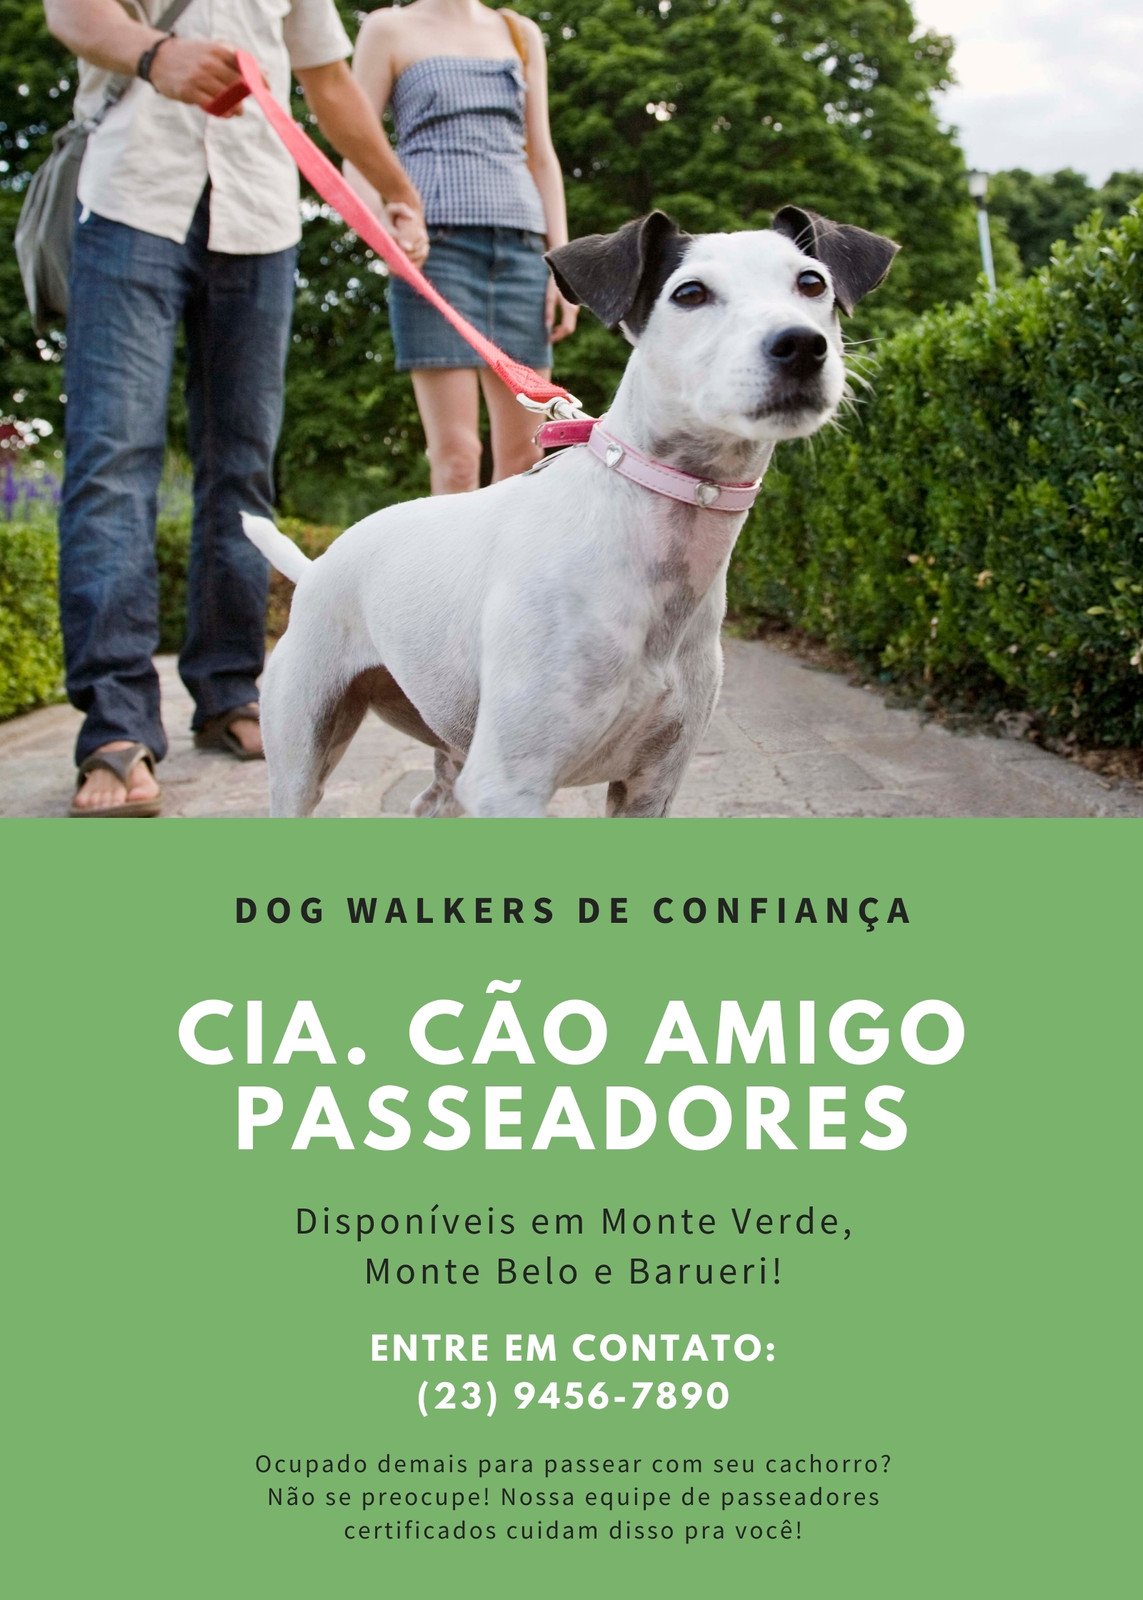 DOG WALKER - O PROFISSIONAL AMIGO DE CAMINHADA DO SEU CÃO